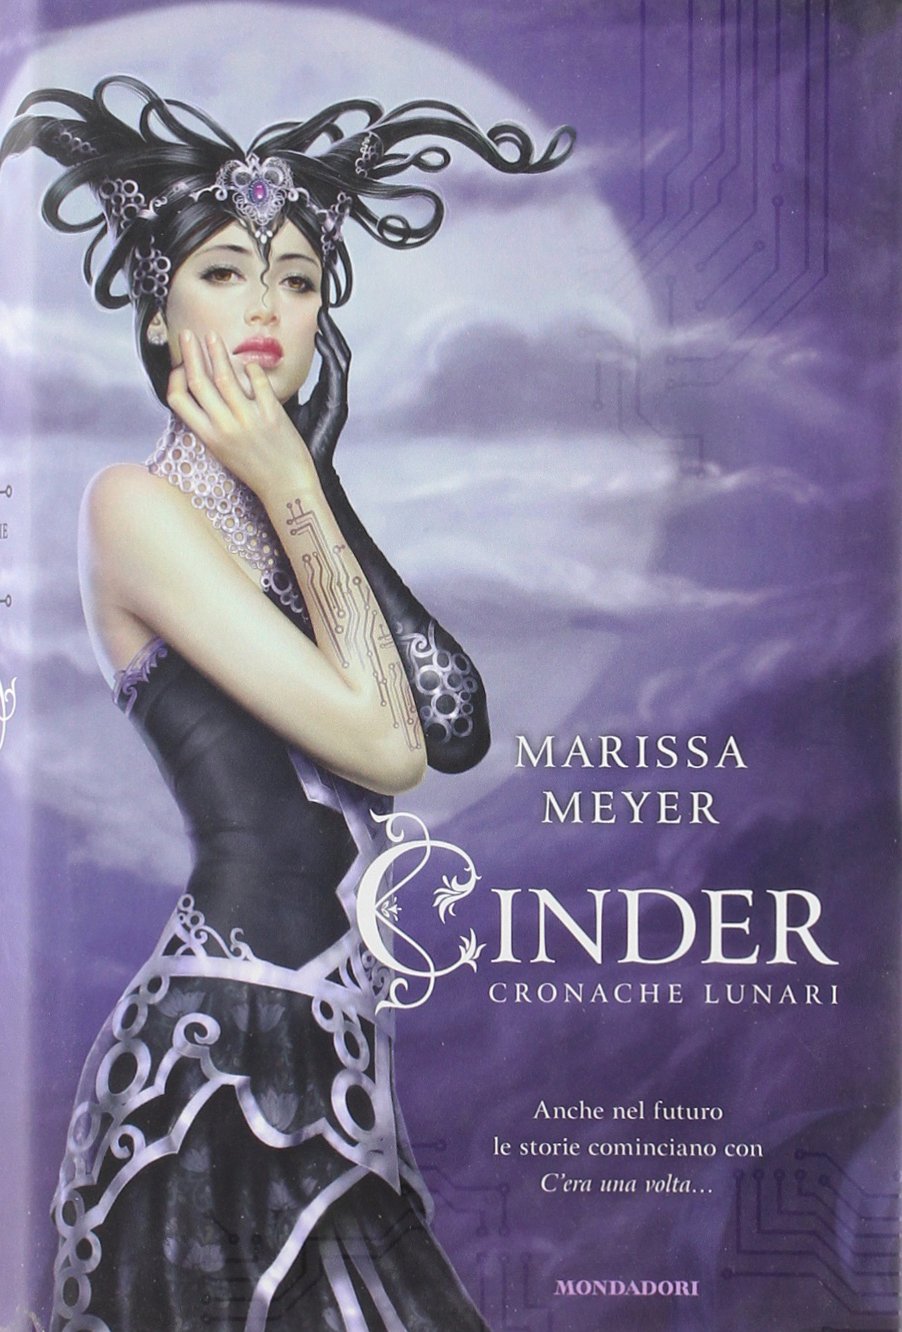 Marissa Meyer - Cinder.jpg